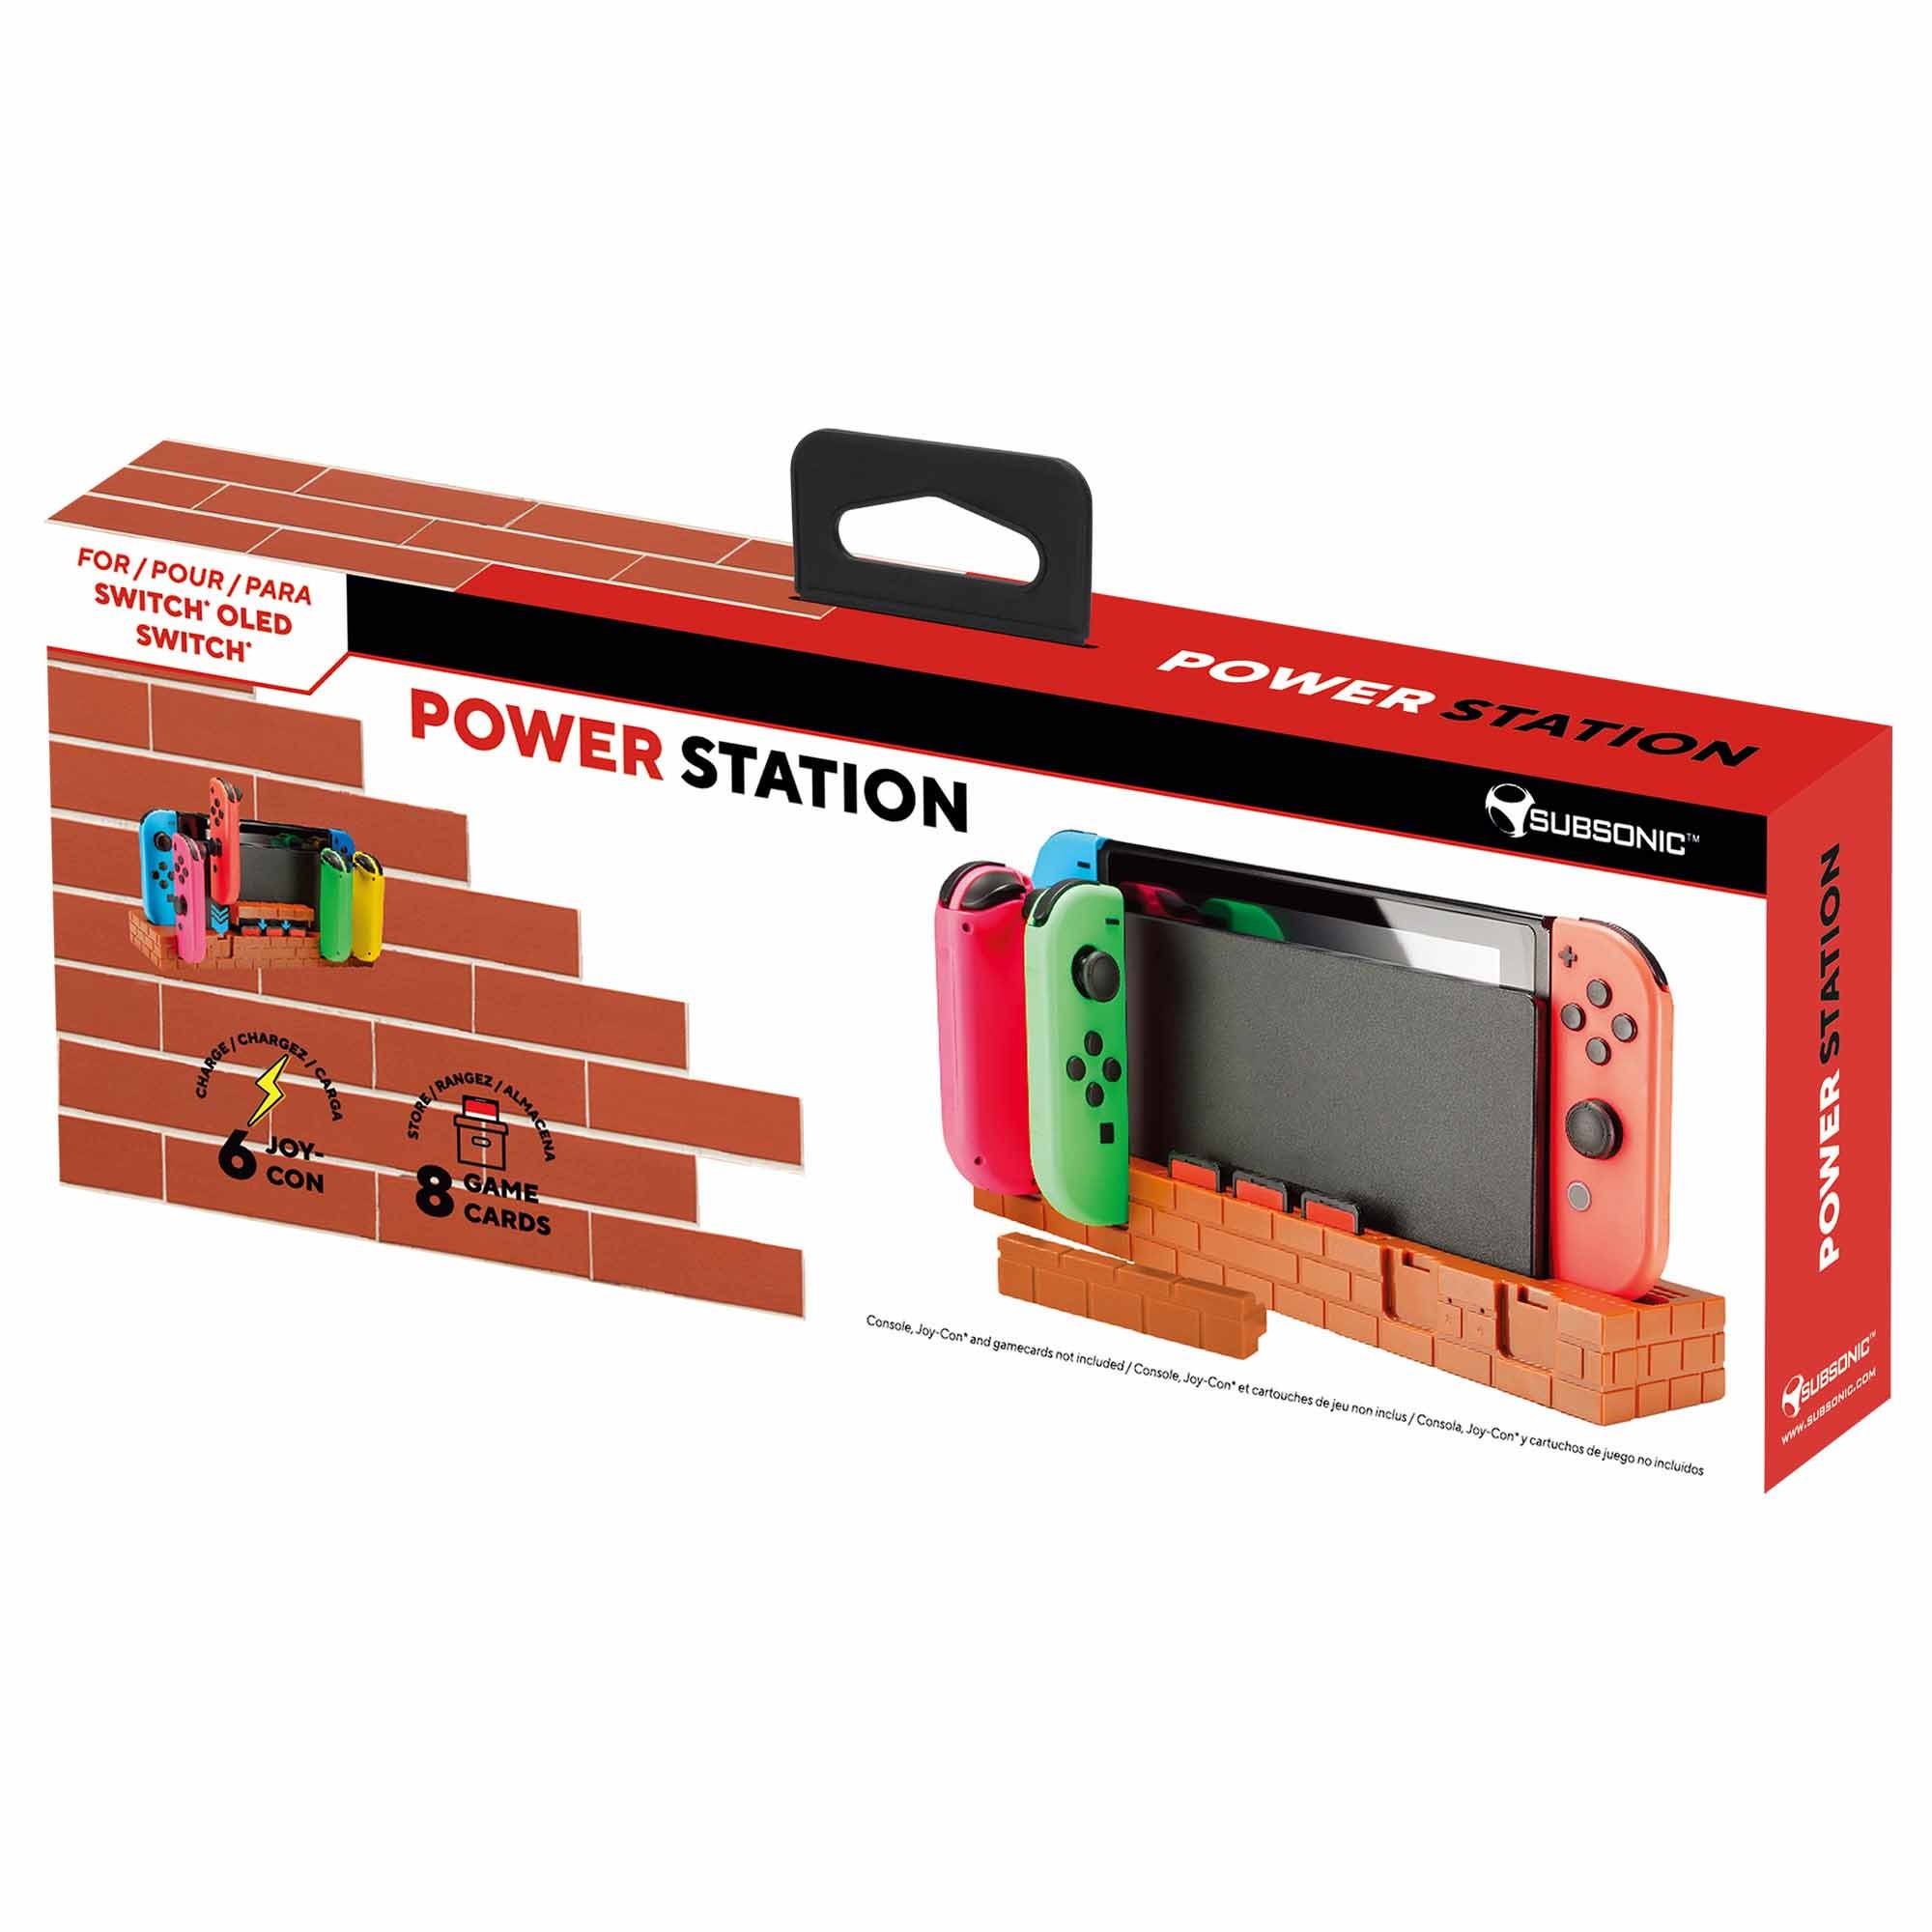 Support de recharge Joy-Con pour Nintendo Switch - Accessoires